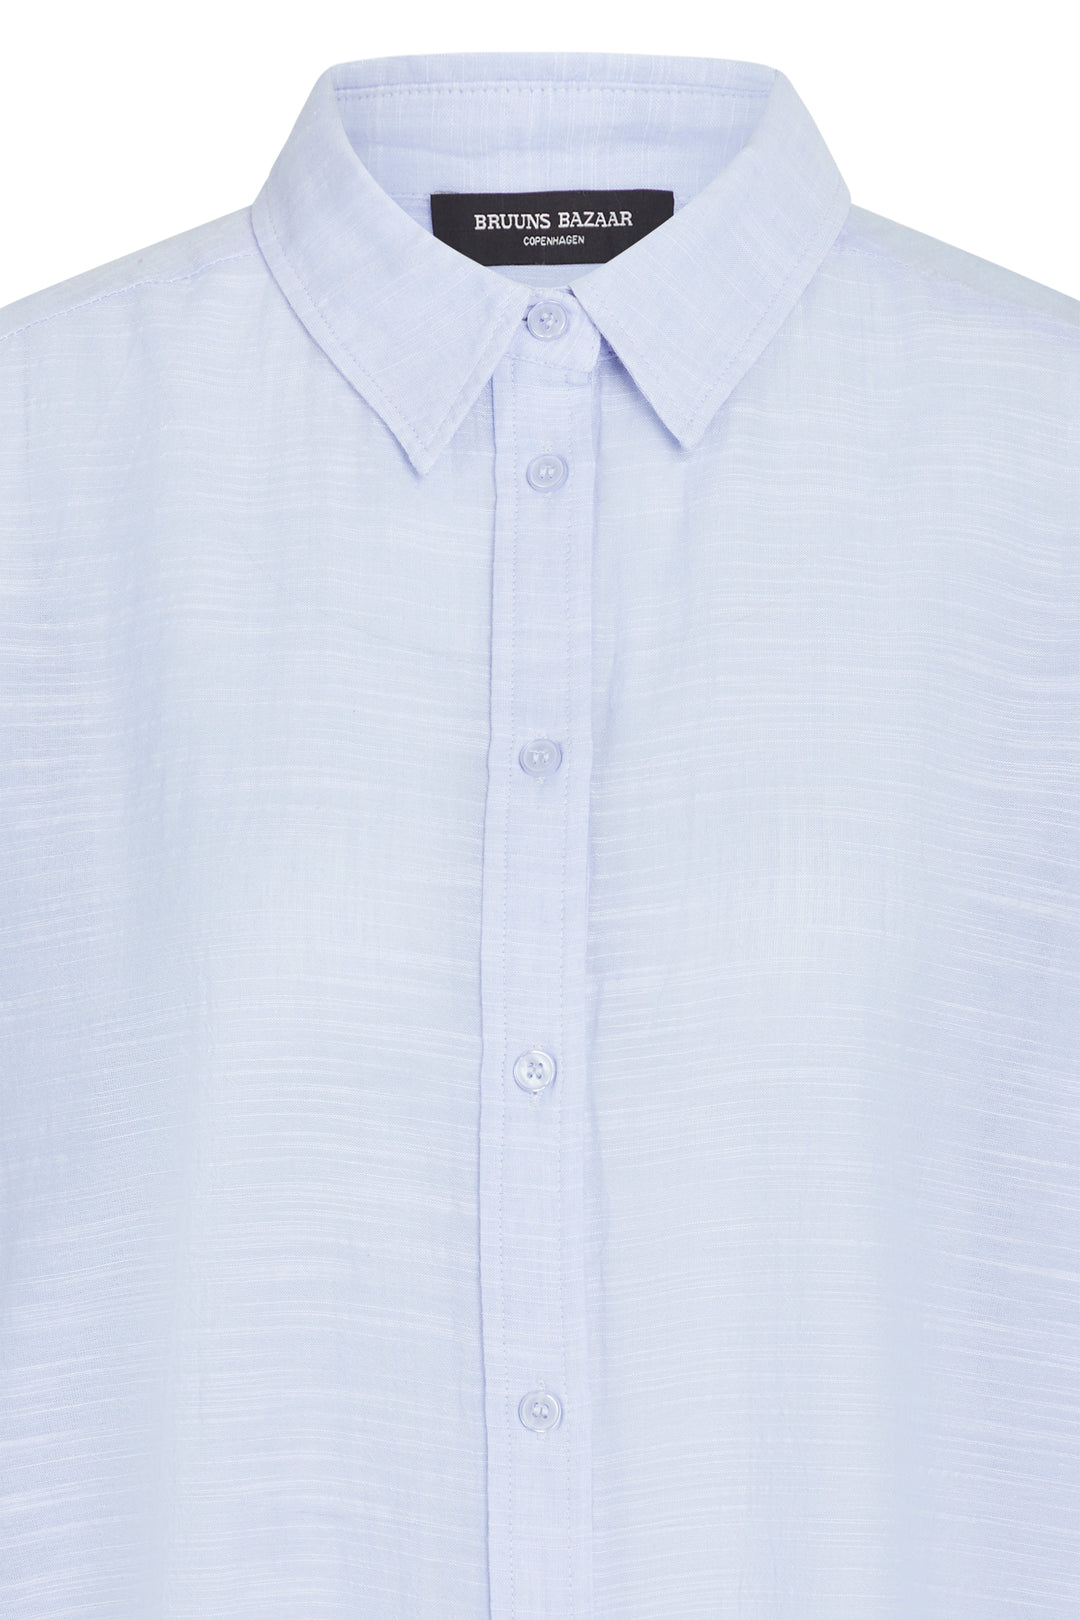 Bruuns Bazaar Women JuniperusBBLong shirt Shirts Blue/White stripe